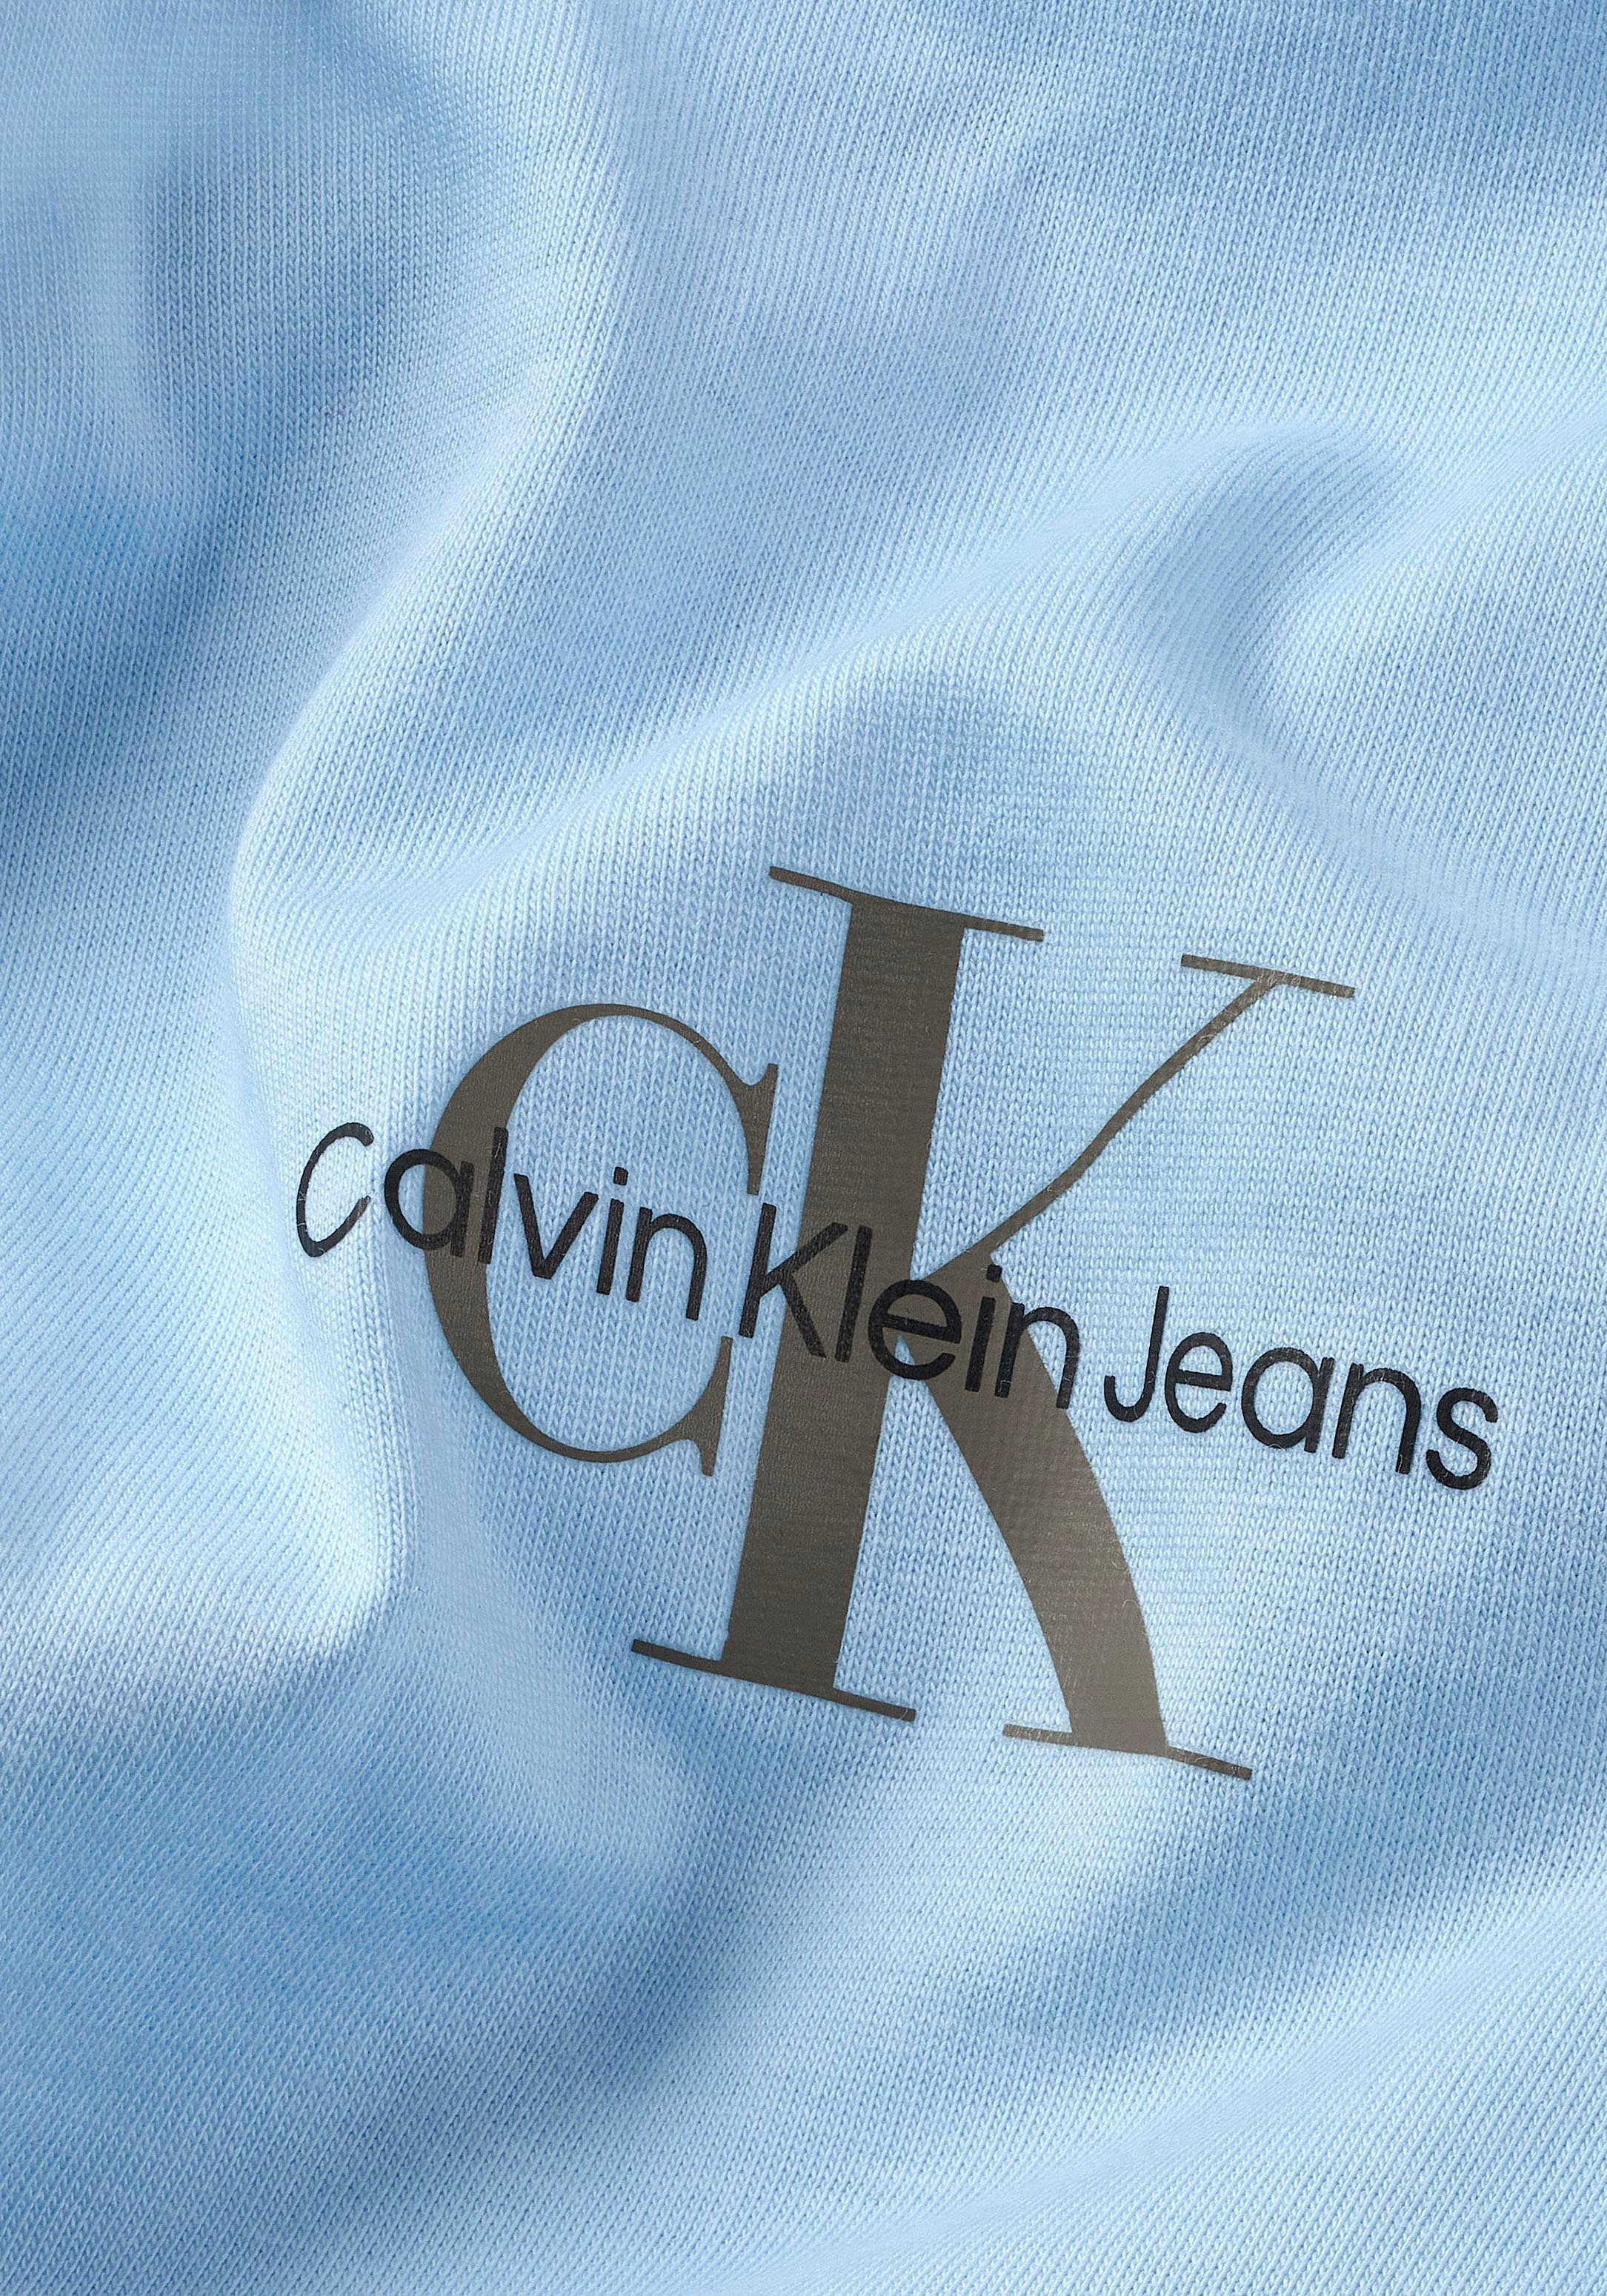 Rundhalsausschnitt Klein Calvin hellblau mit T-Shirt Jeans